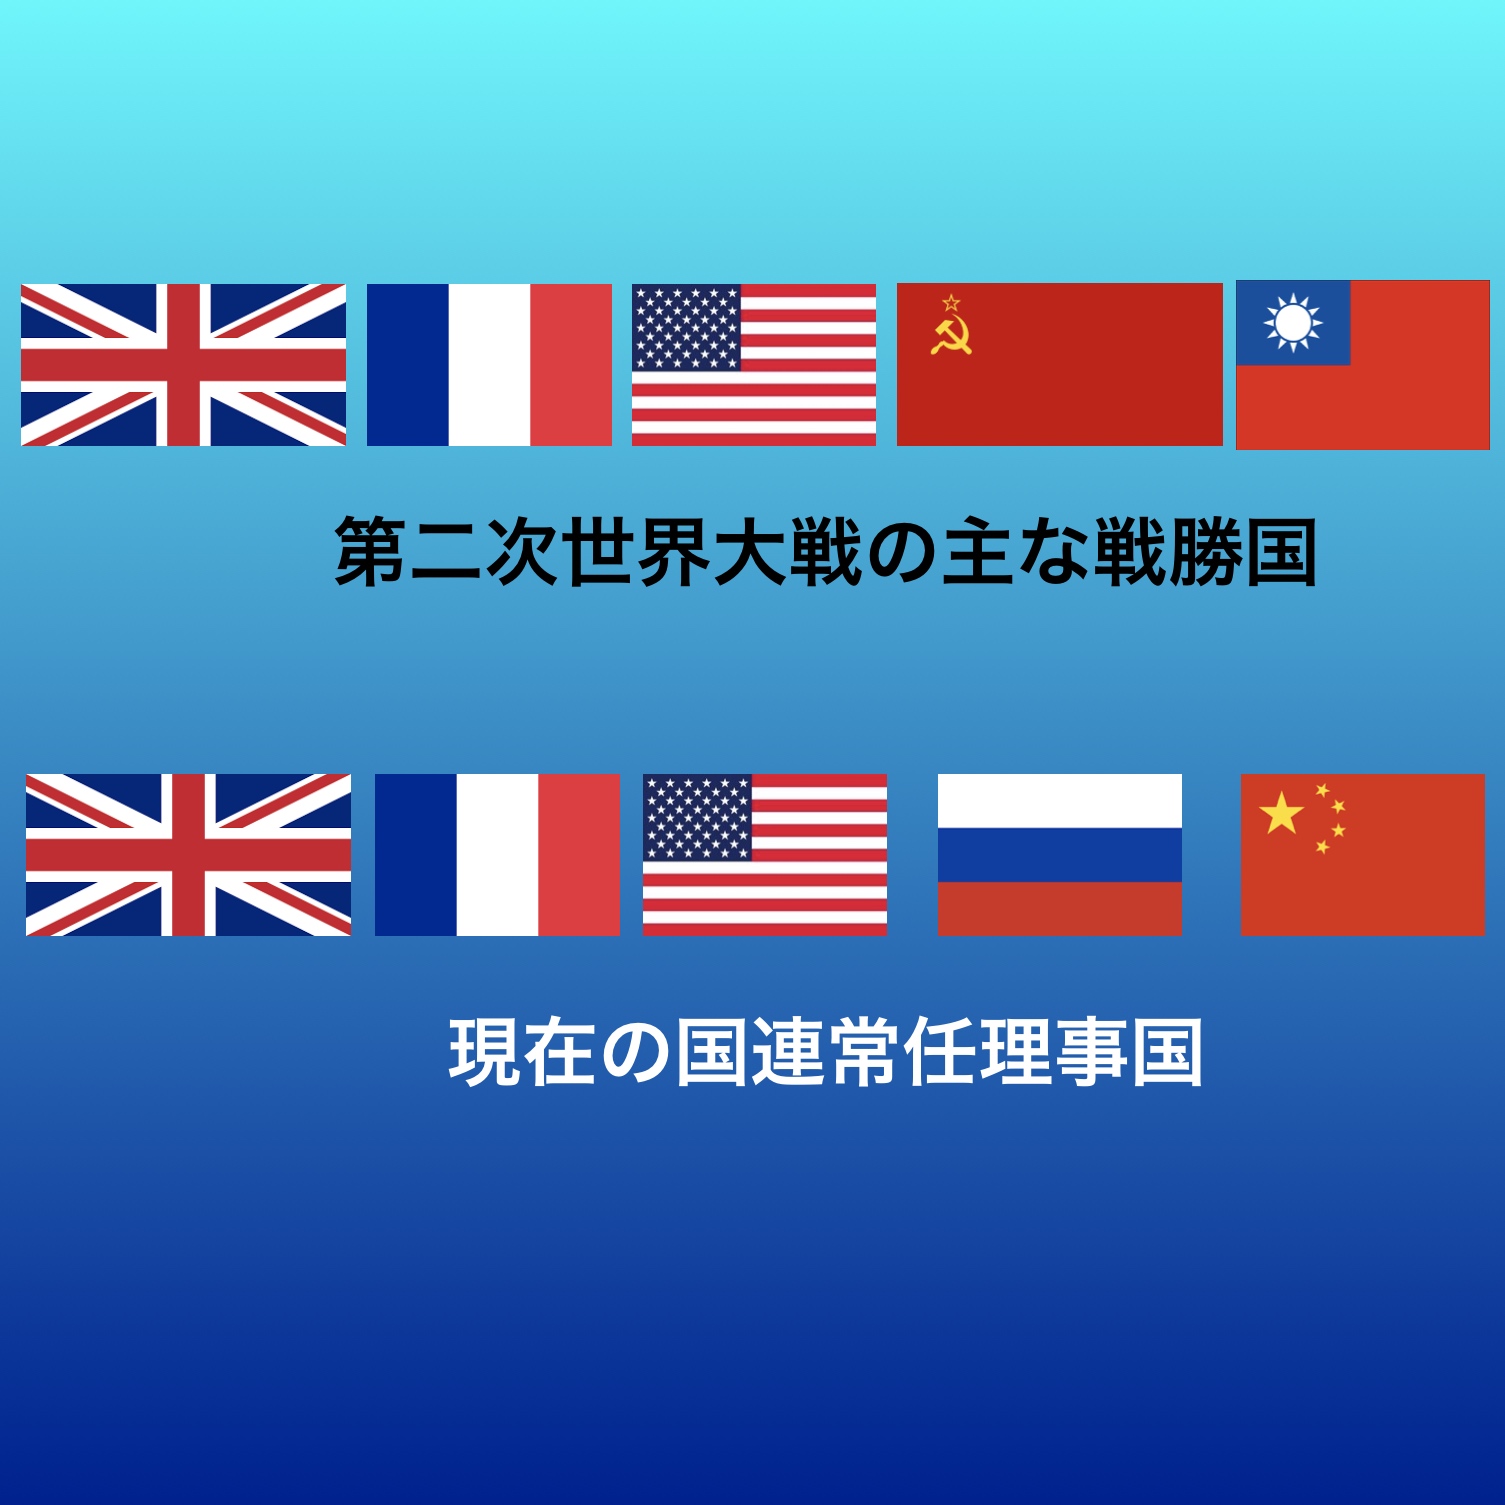 中田敦彦氏のyou Tube大学 中国の国旗と国連軍の認識を間違ってませんか 令和電子瓦版